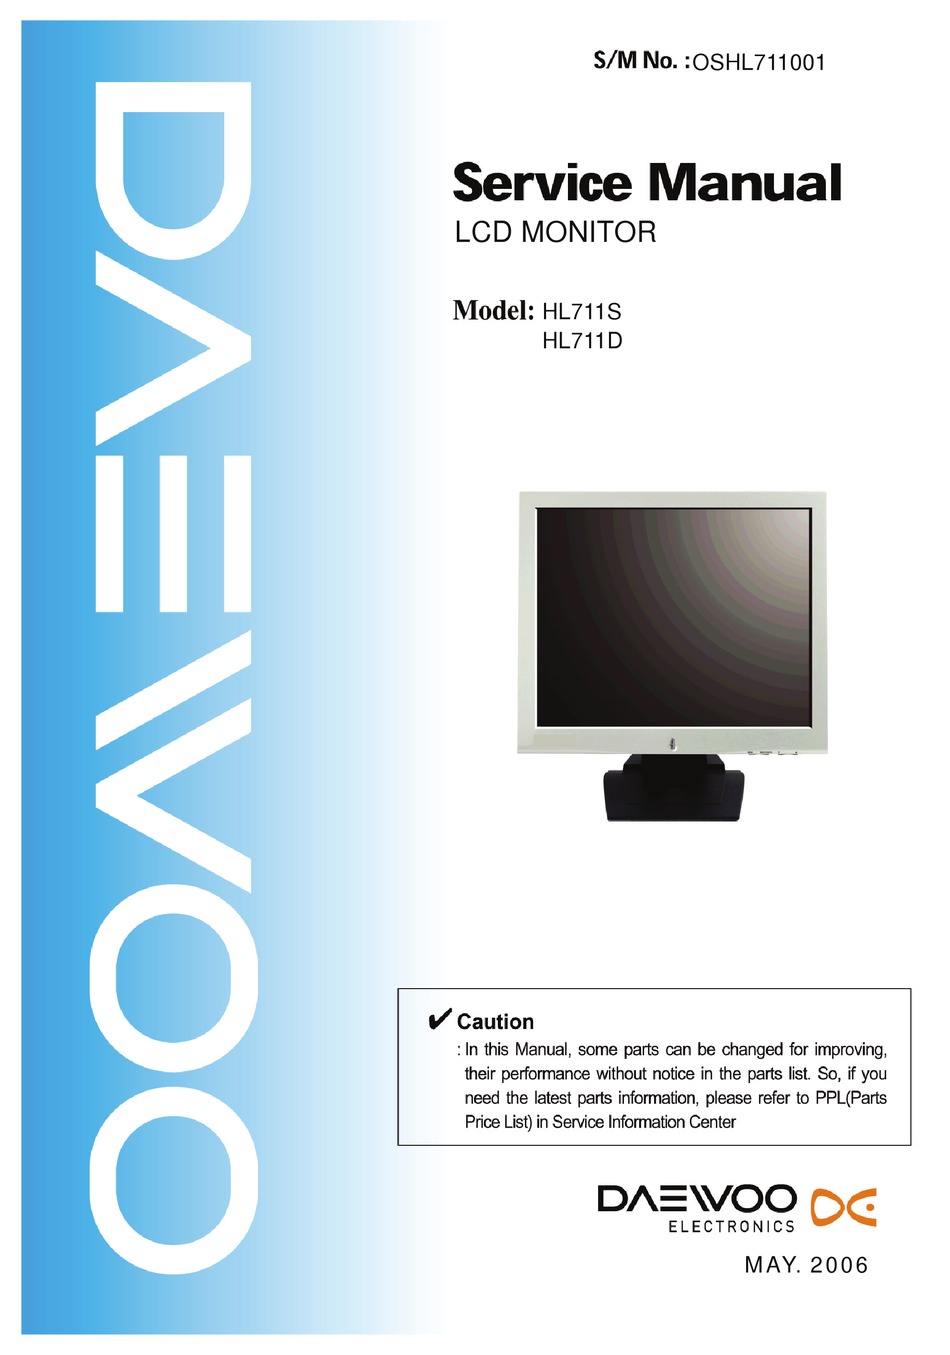 DAEWOO HL711S SERVICE MANUAL Pdf Download | ManualsLib